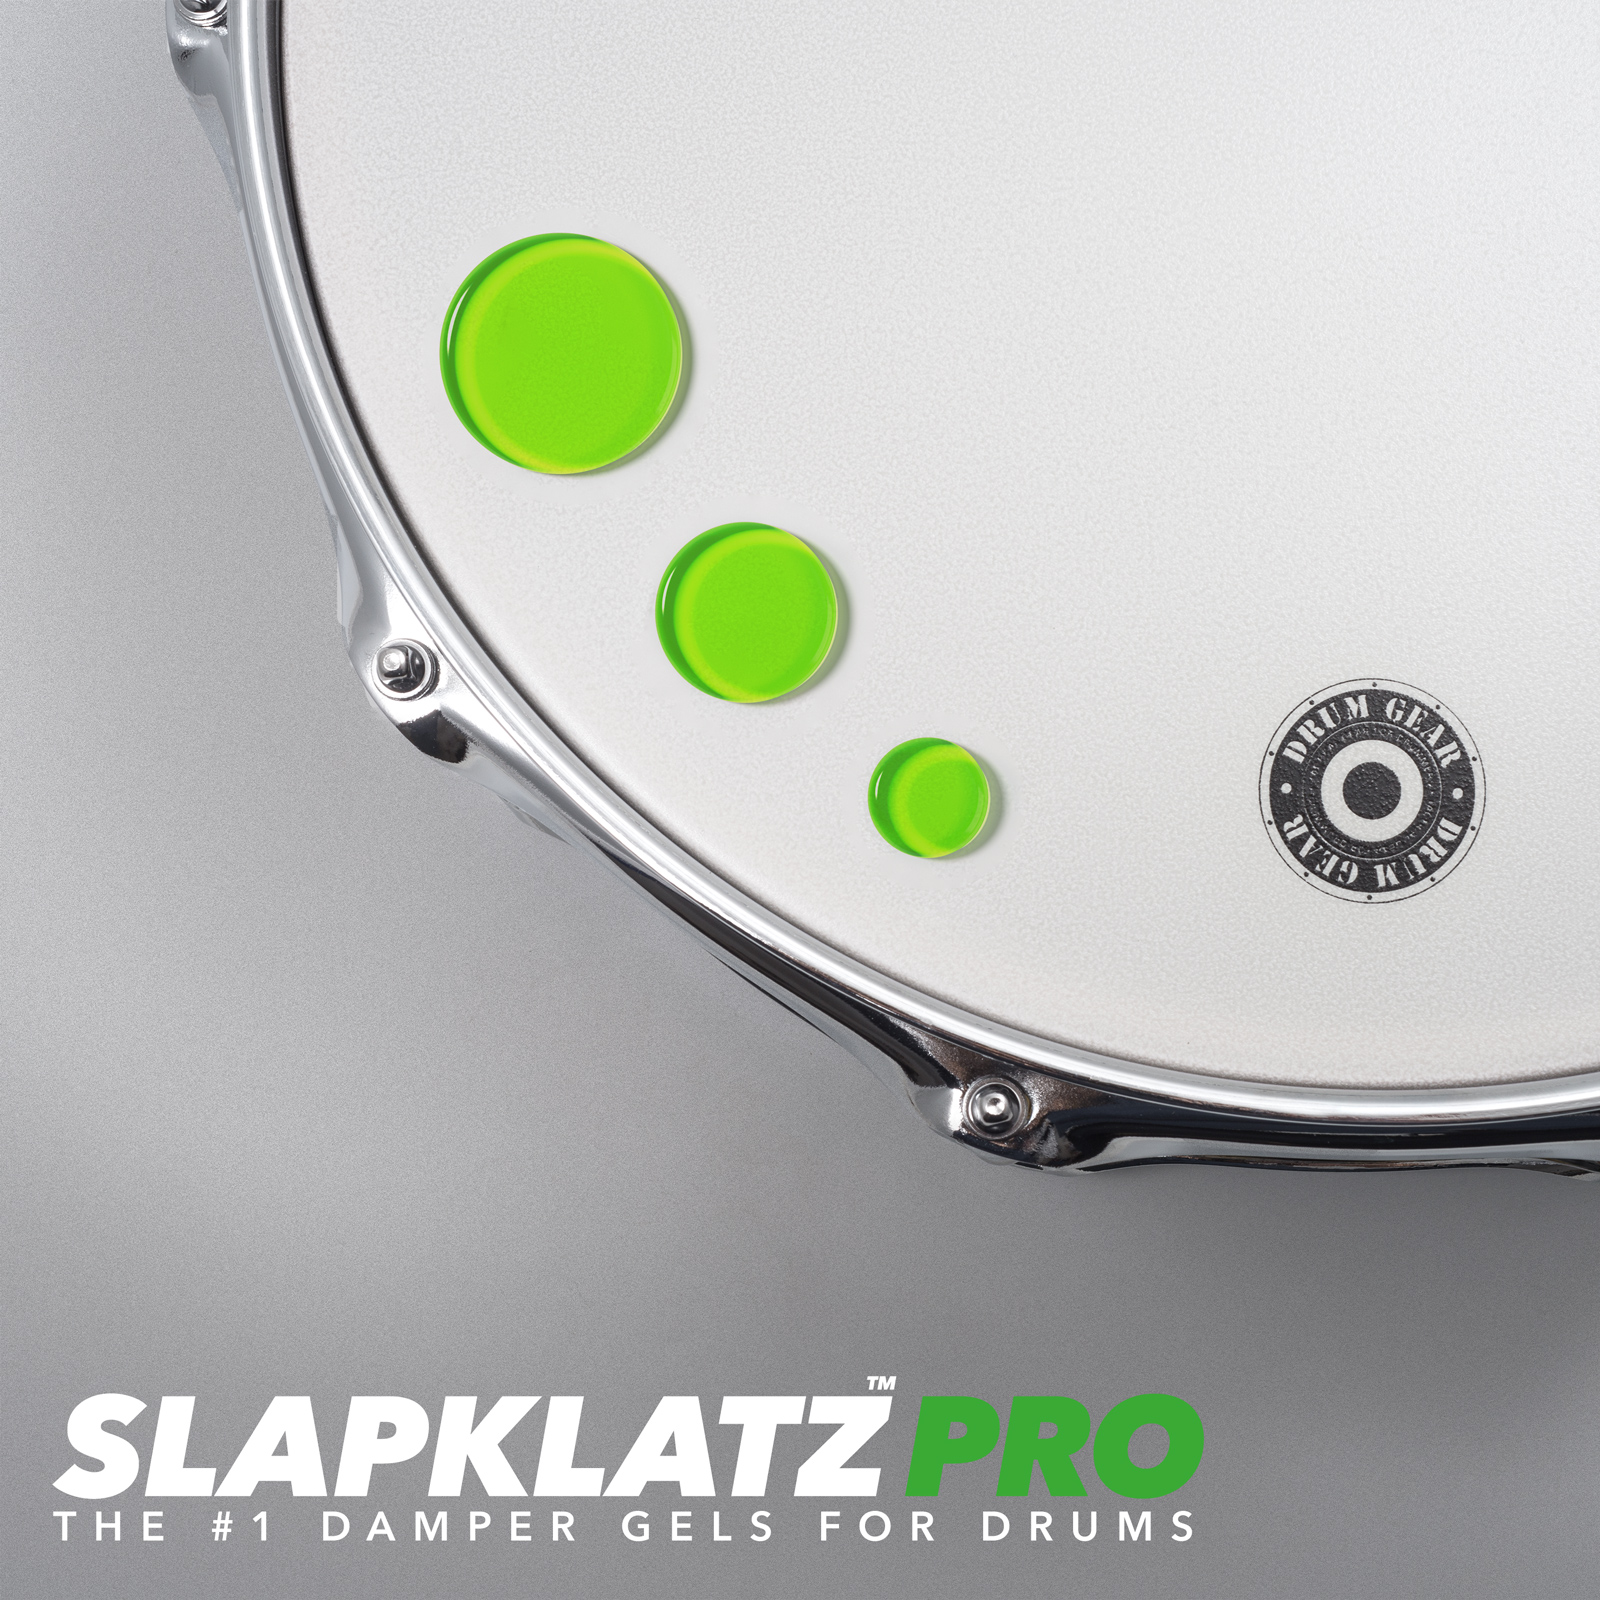 SlapKlatz Alien Green on drum 2022 all 3 sizes showna